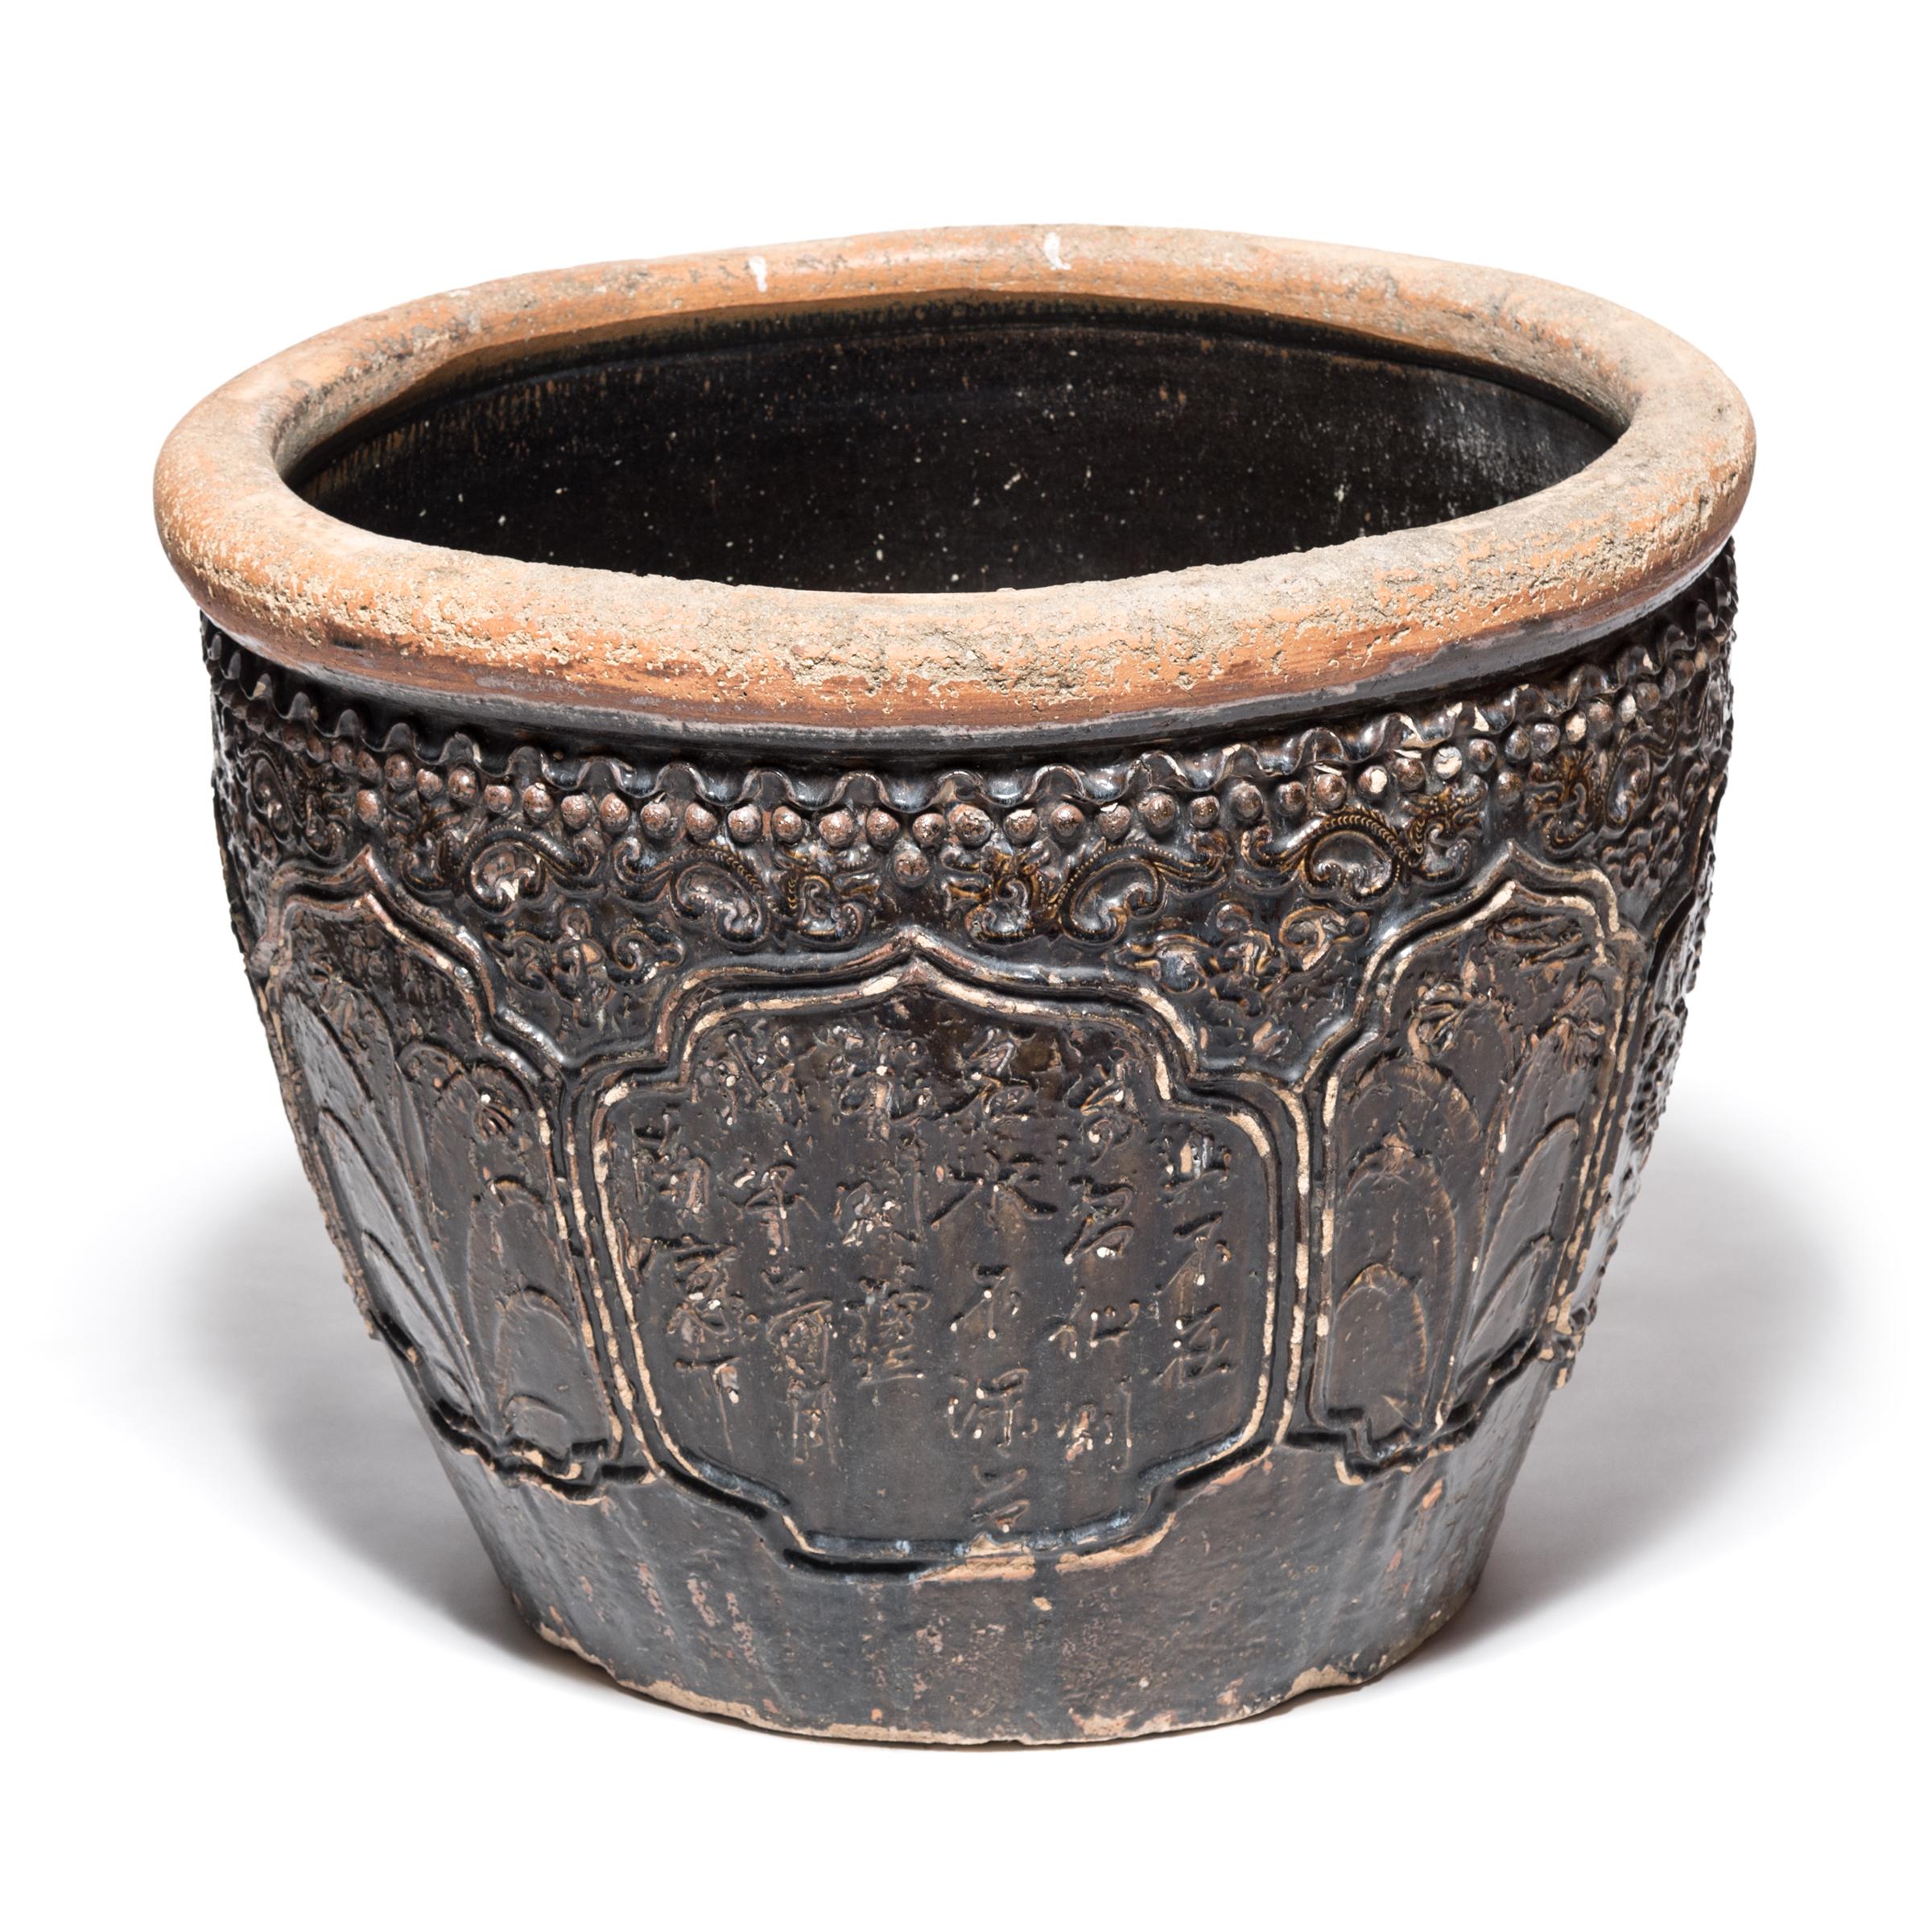 Diese monumentale glasierte Keramikurne aus dem späten 19. Jahrhundert aus Südchina wurde ursprünglich zum Einlegen von Lebensmitteln verwendet. Auf der hochreliefierten Oberfläche sind florale Medaillons und abstrakte Drachen, Symbole der Macht und